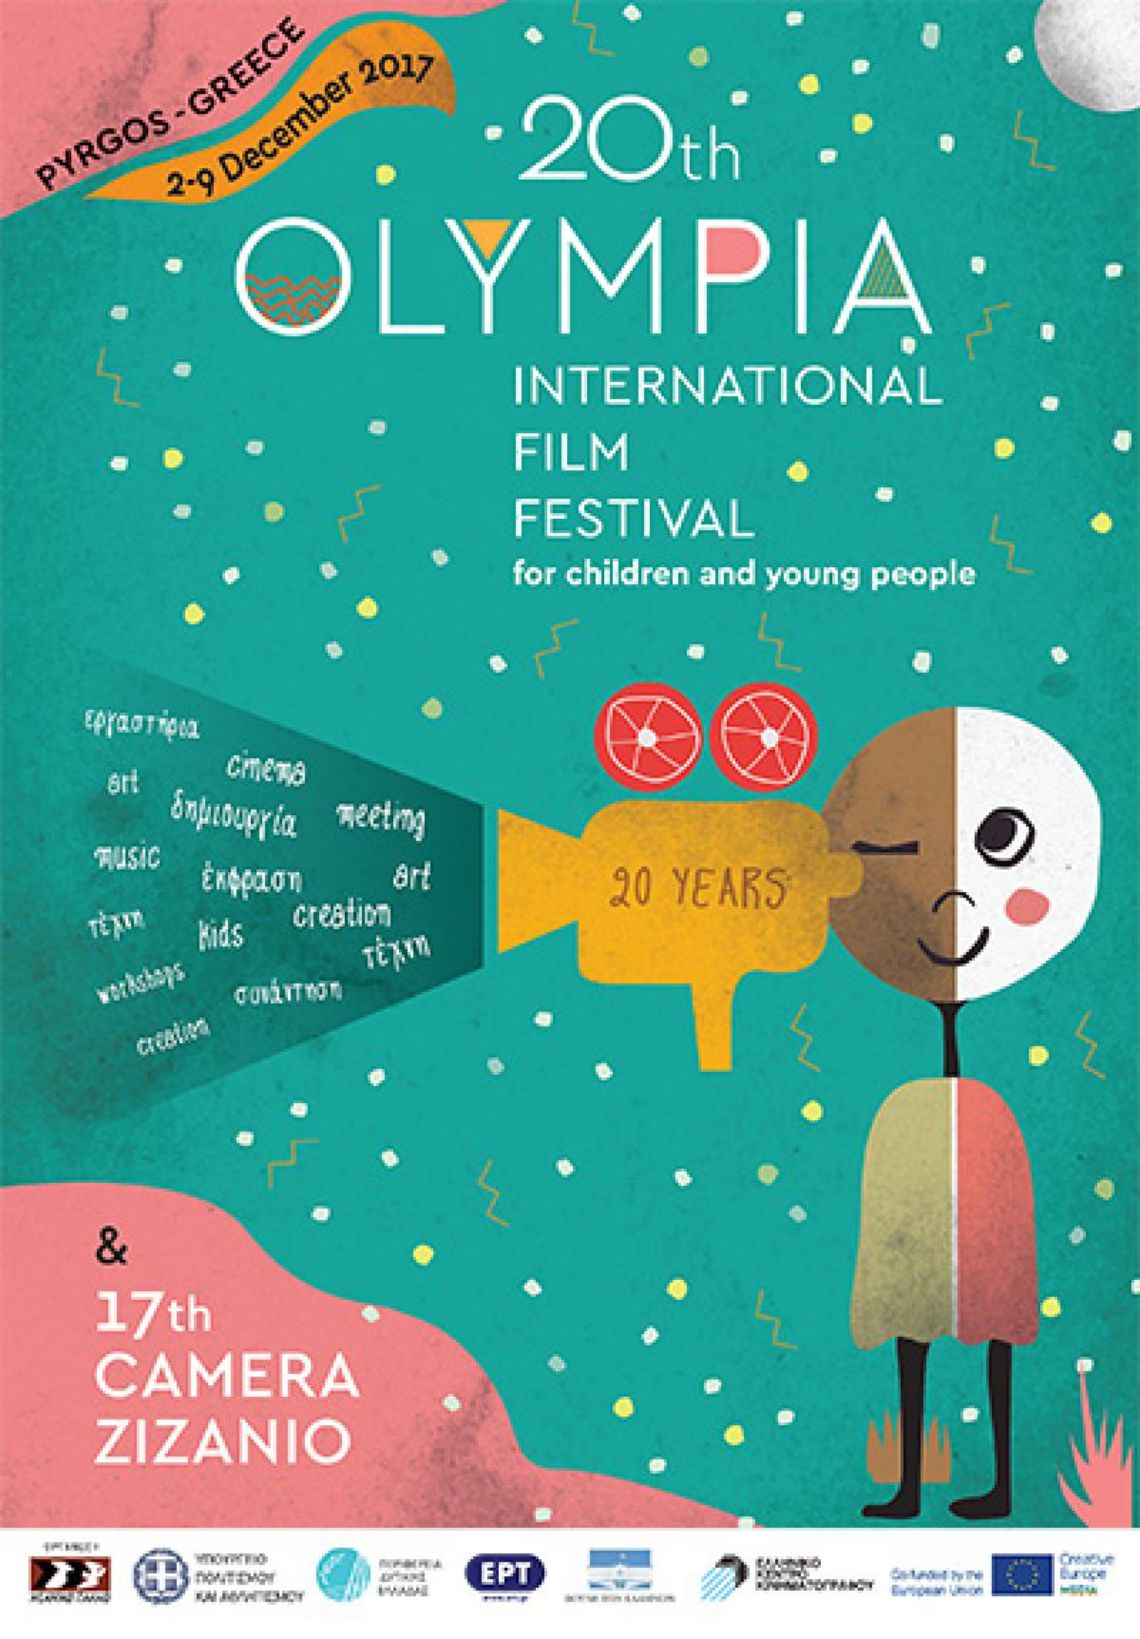 Η Βουλή βραβεύει το Διεθνές Φεστιβάλ Κινηματογράφου Ολυμπίας για παιδιά και νέους